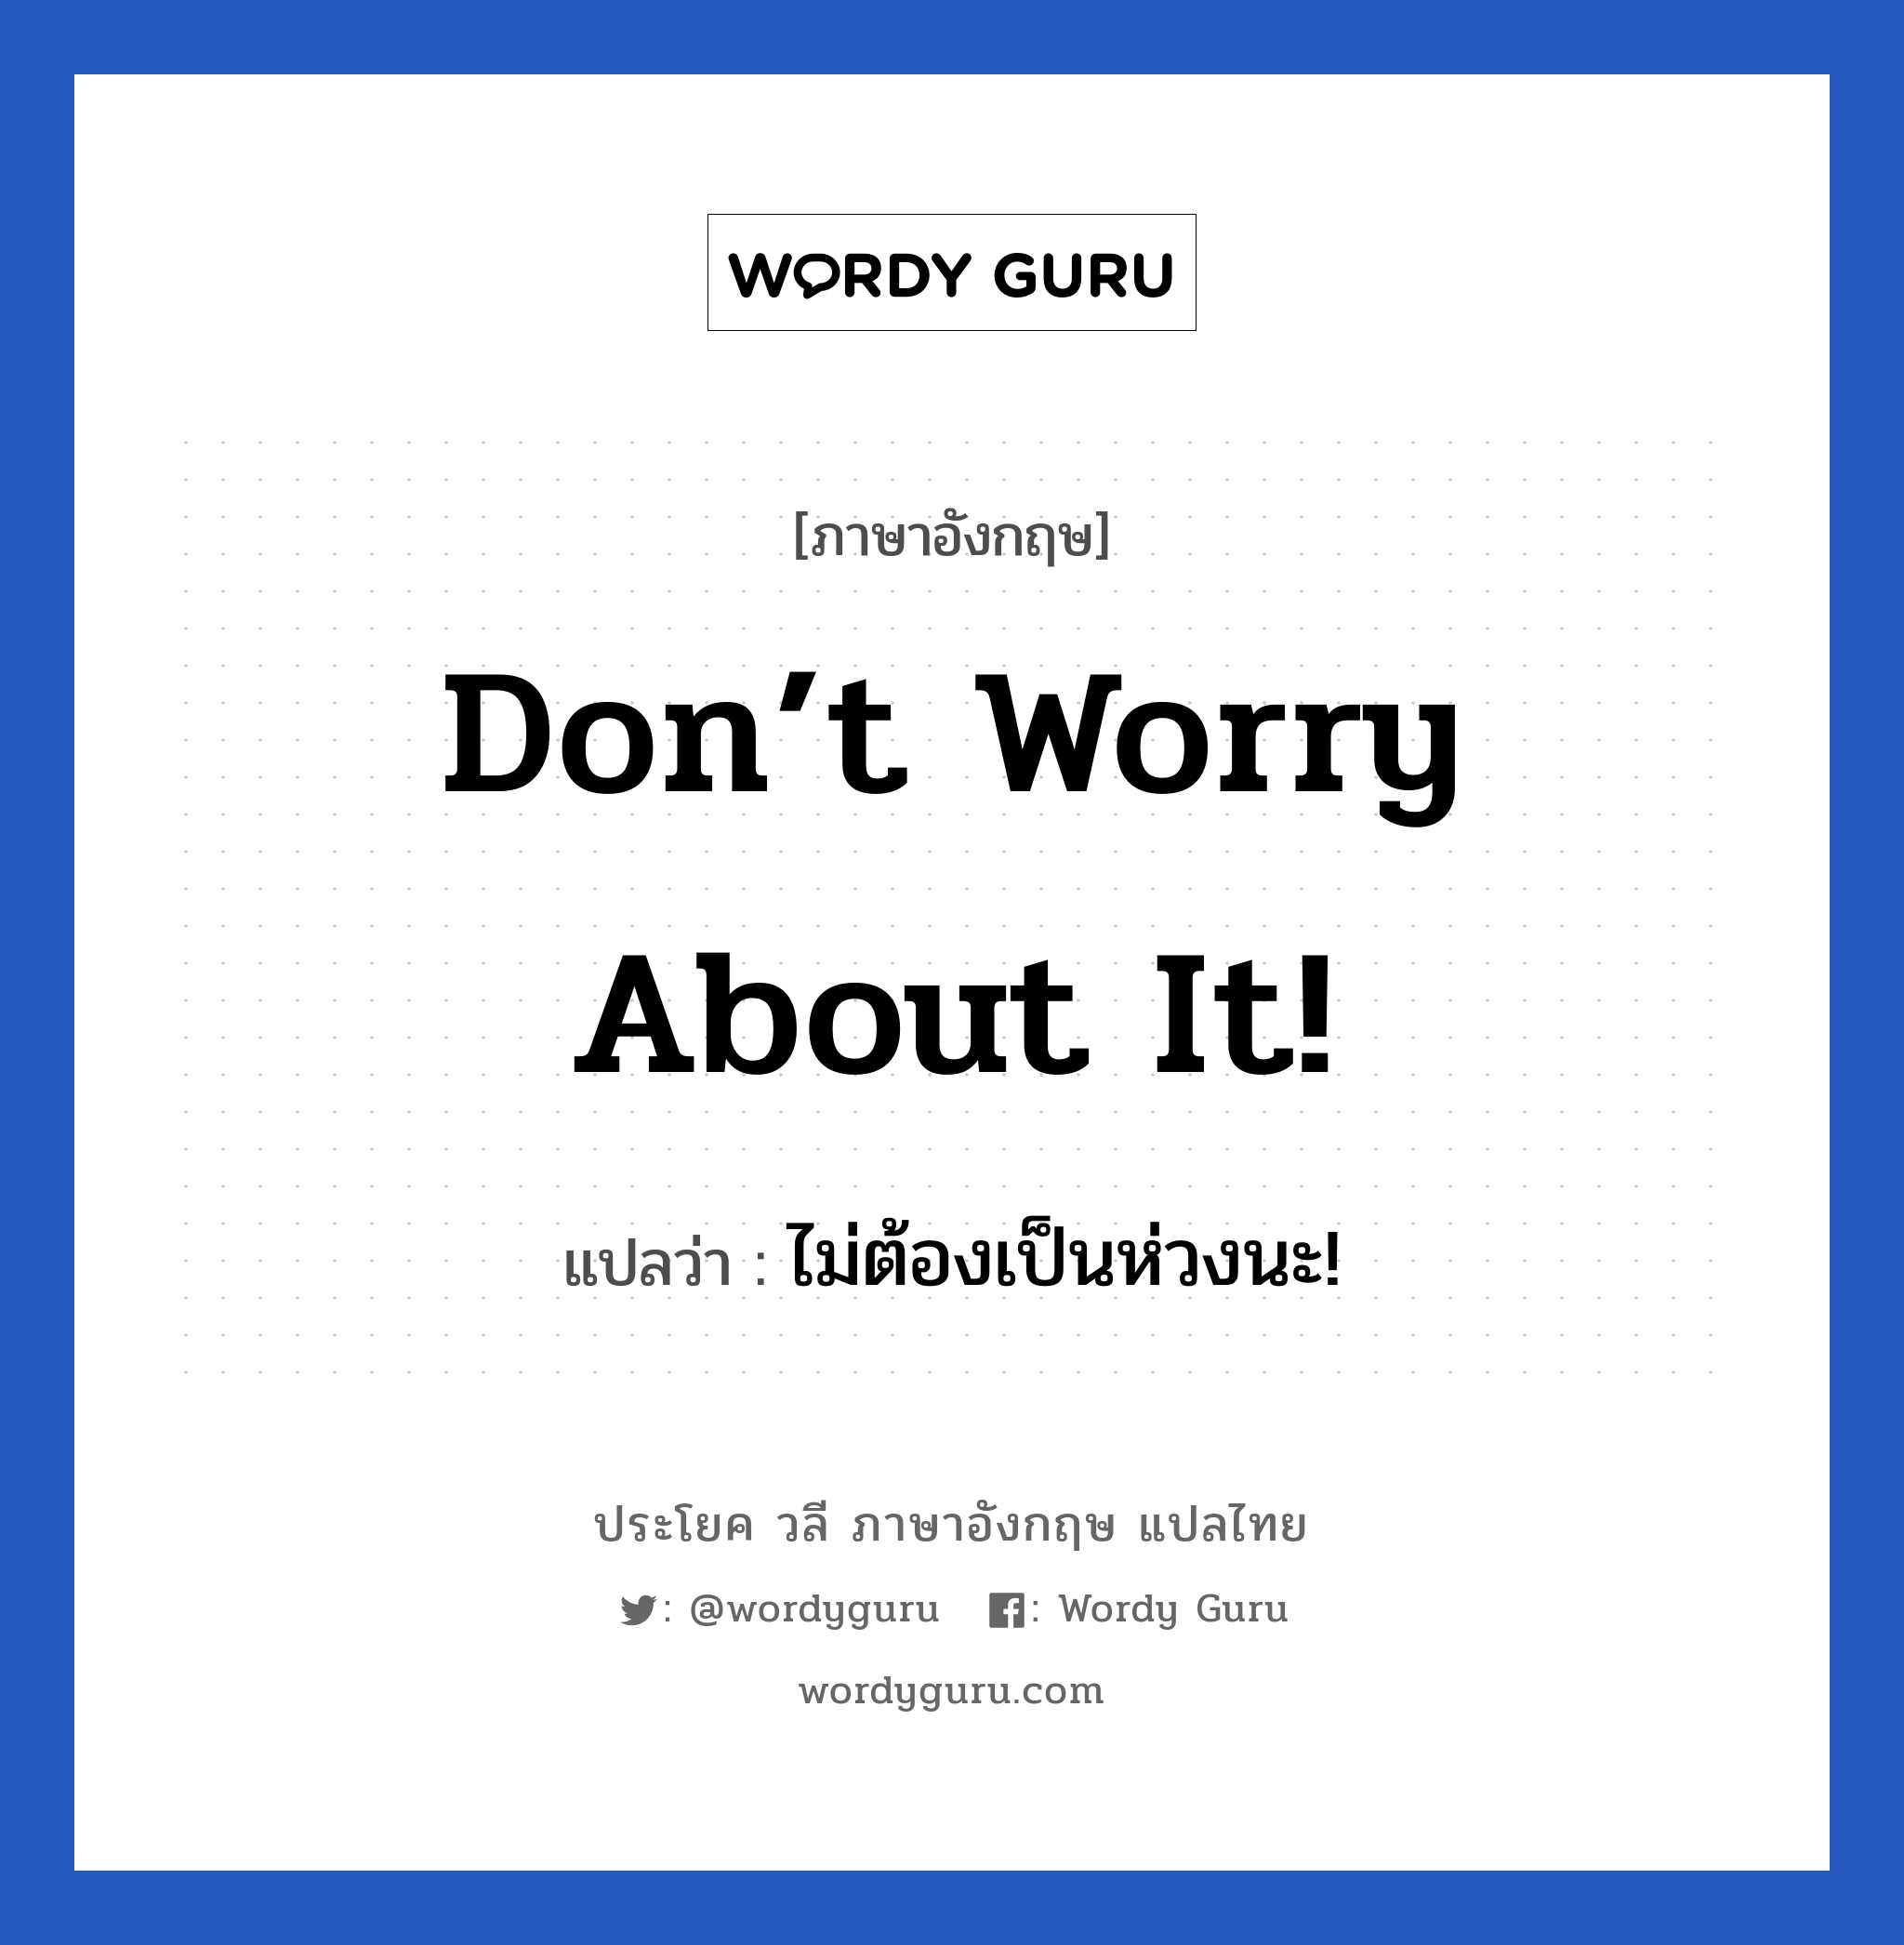 ไม่ต้องเป็นห่วงนะ! ภาษาอังกฤษ?, วลีภาษาอังกฤษ ไม่ต้องเป็นห่วงนะ! แปลว่า Don’t worry about it!